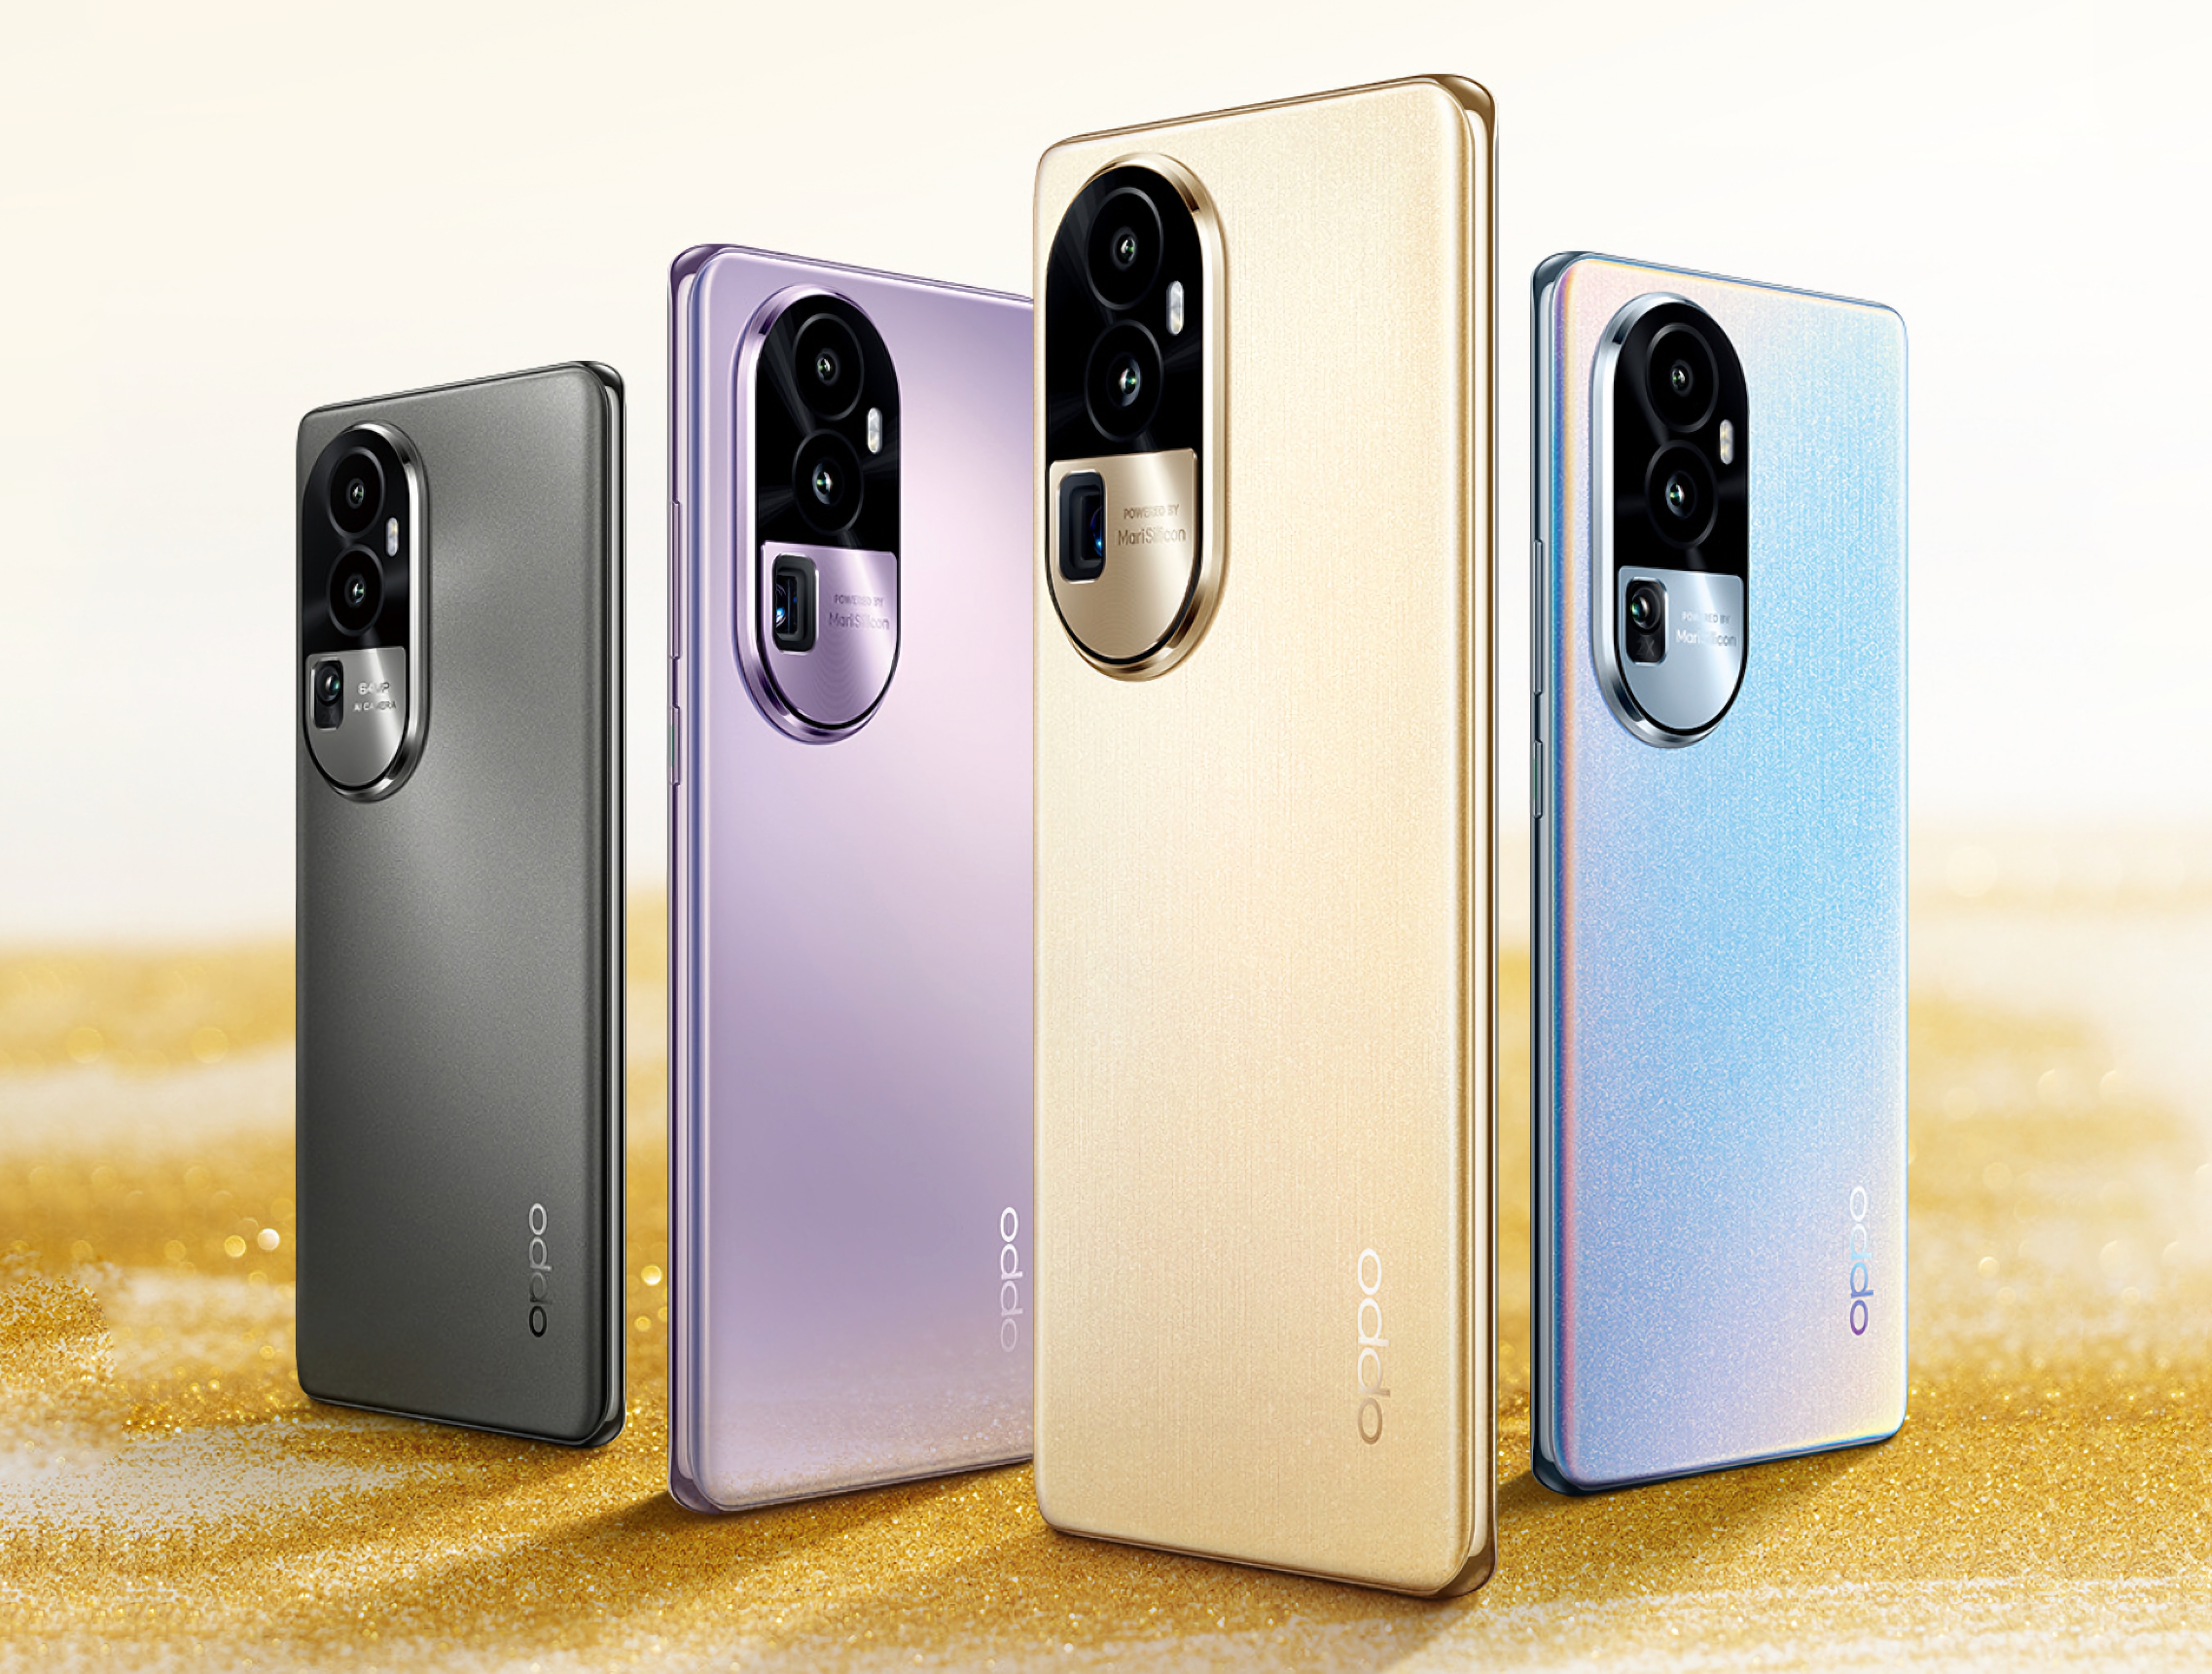 OPPO zaprezentowało Reno 10 Pro i Reno 10 Pro+: smartfony z ekranami ProXDR OLED, układami Dimensity 8200/Snapdragon 8+ Gen 1 i ładowaniem 100 W.